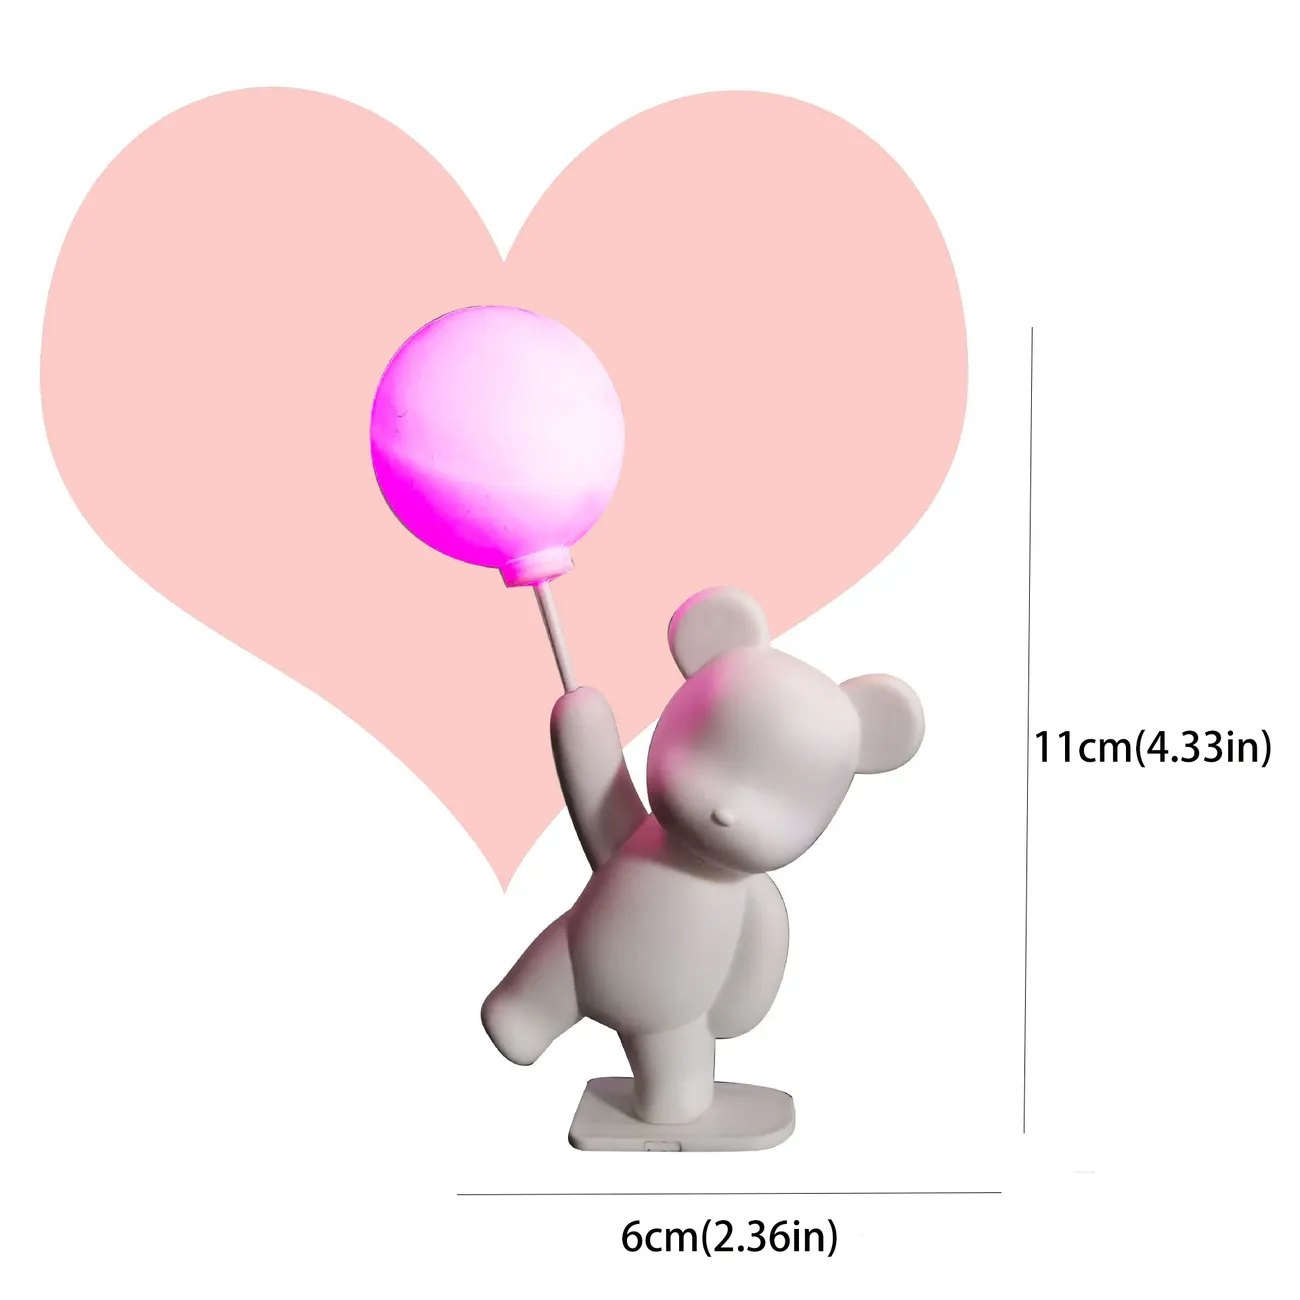 Urso Balão de Confissão com Luzes - Decoração Romântica de Bolo para o Dia dos Namorados Branco big image 1